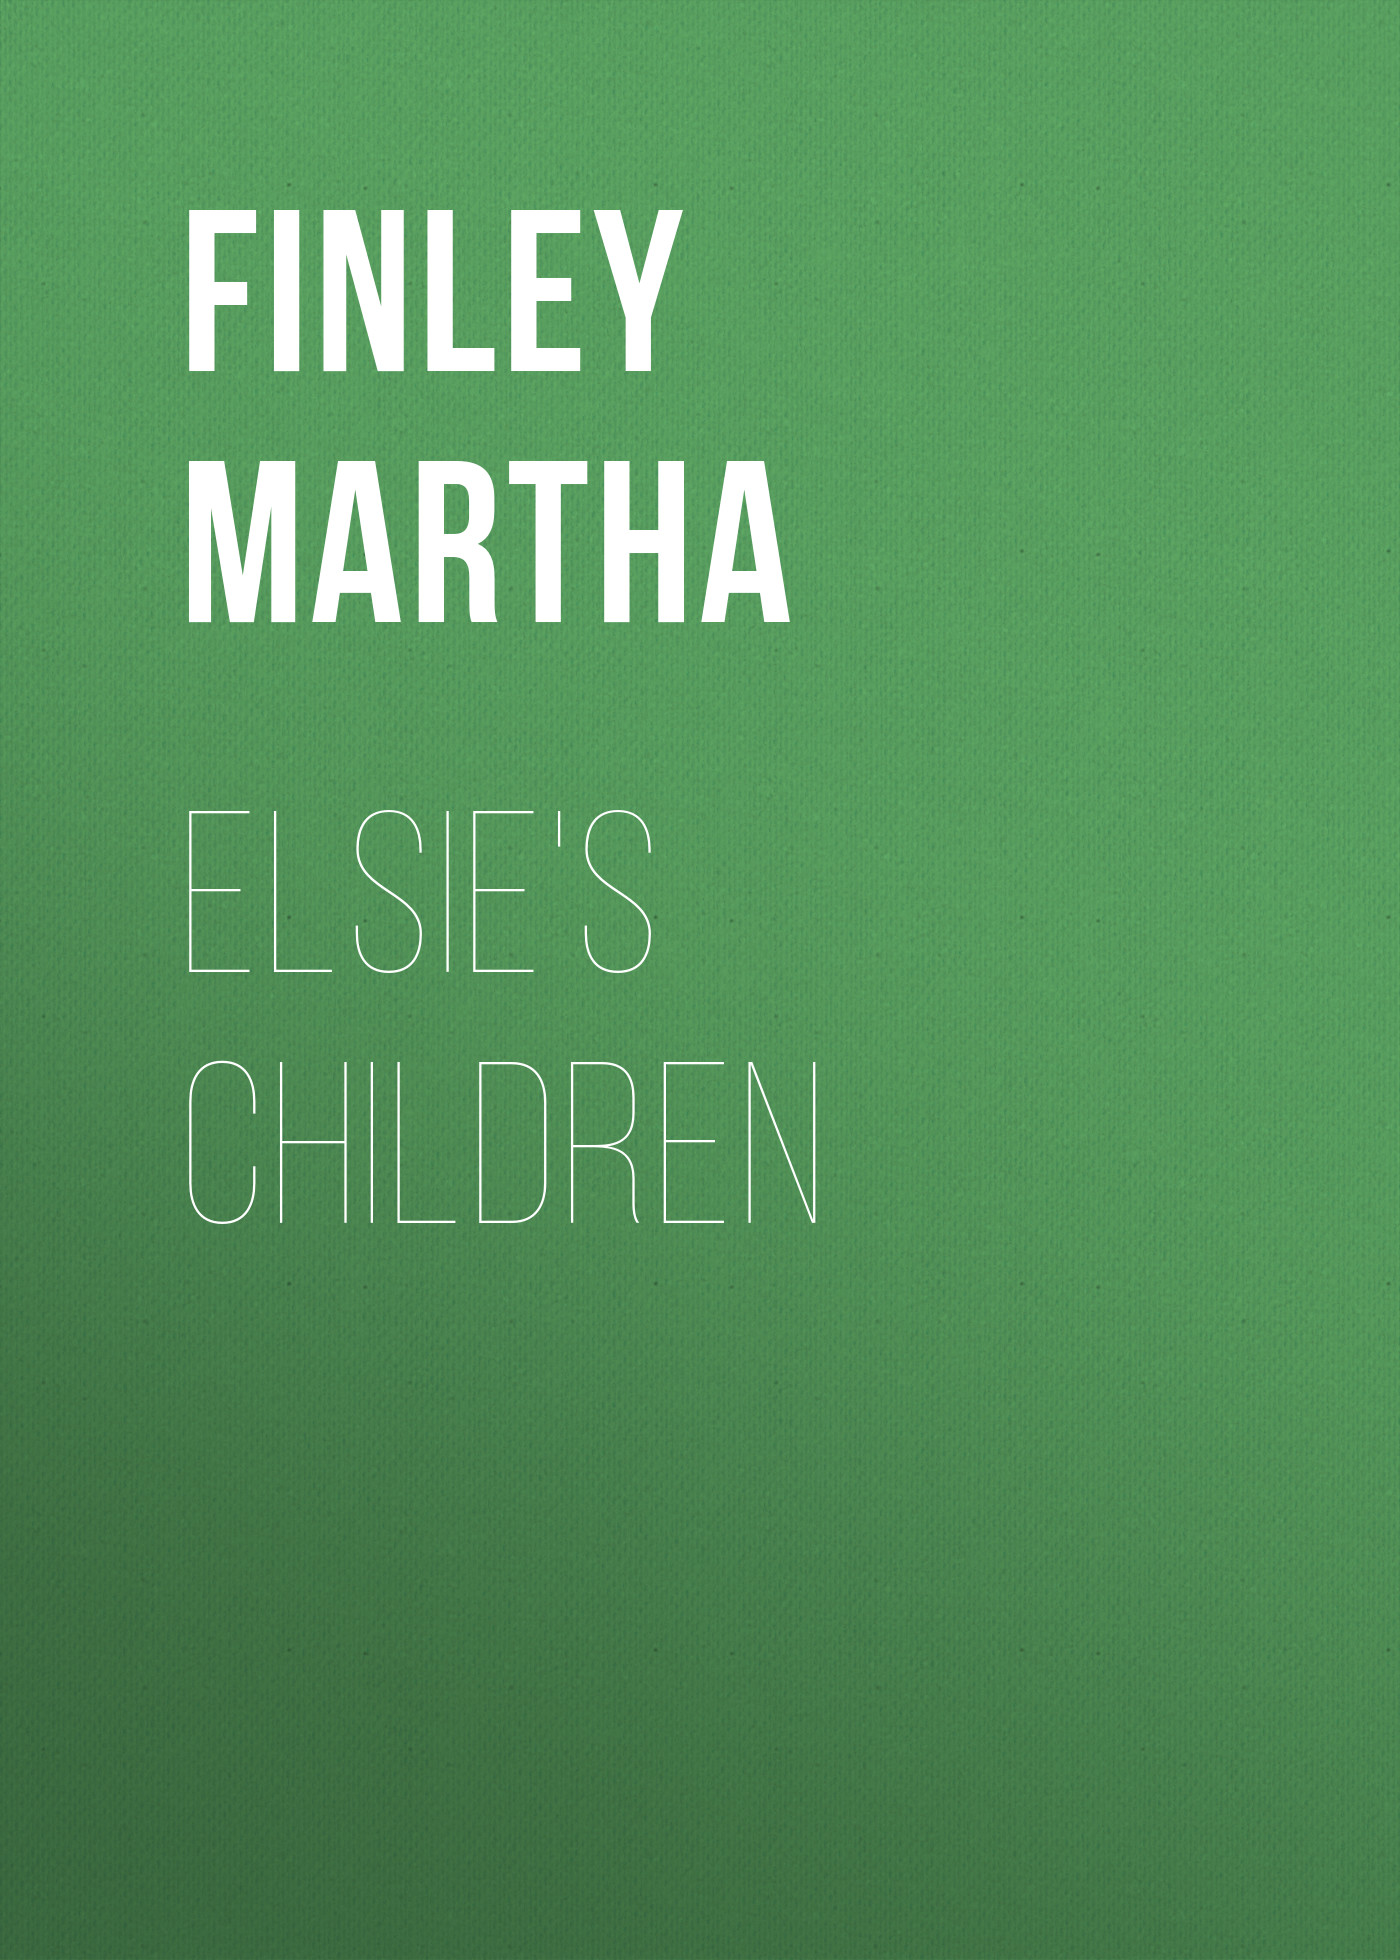 Книга Elsie's children из серии , созданная Martha Finley, может относится к жанру Зарубежная старинная литература, Зарубежная классика. Стоимость электронной книги Elsie's children с идентификатором 25203335 составляет 0 руб.